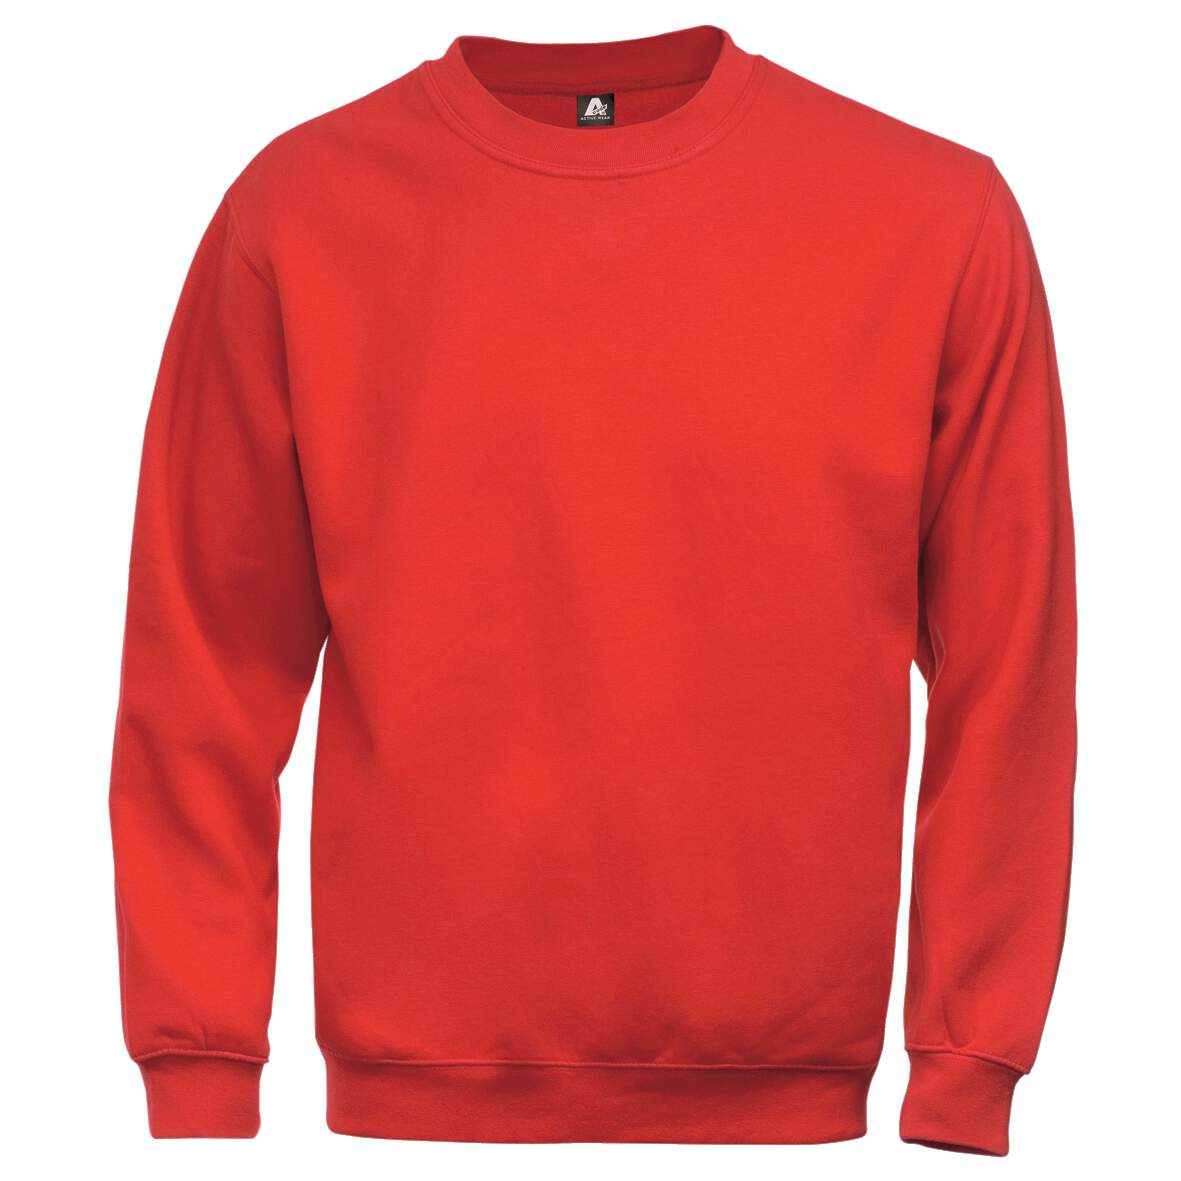 1181280 - Sweatshirt rot Gr.S 100225